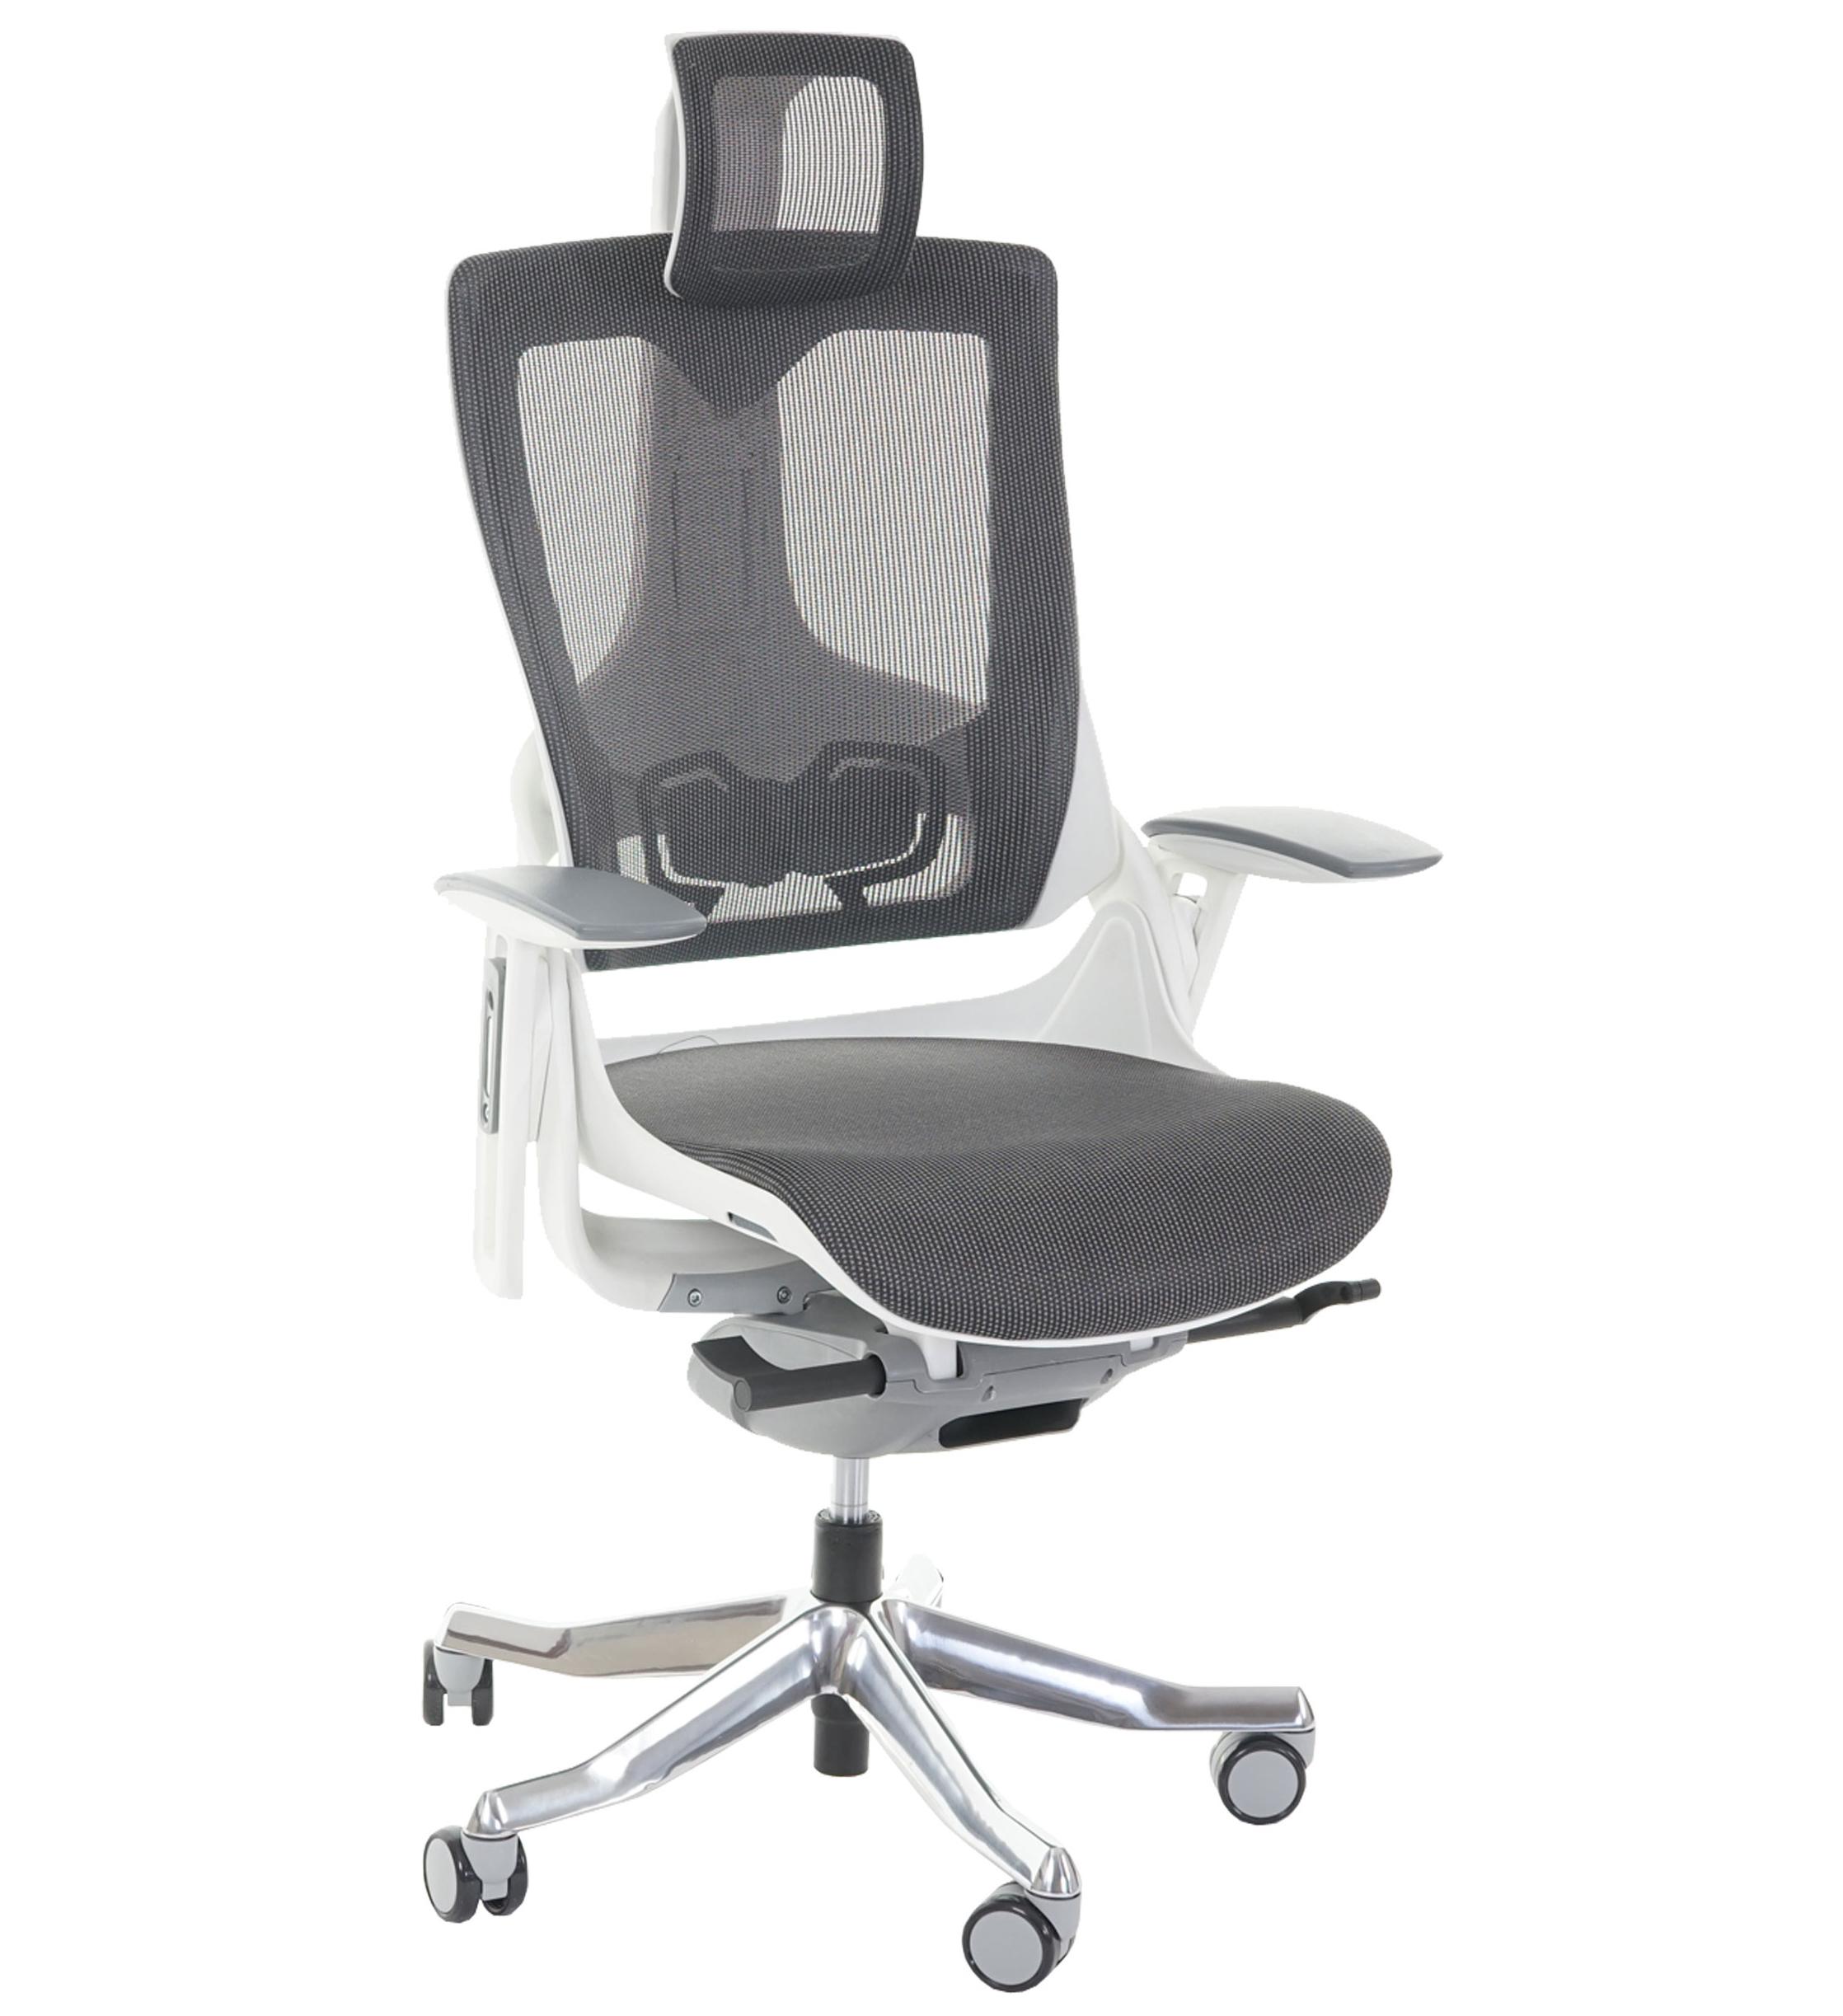 Ergonomischer Bürostuhl NIL, vielseitig verstellbar, hohe Qualität, für die 8h-Nutzung, Farbe Weiß / Grau